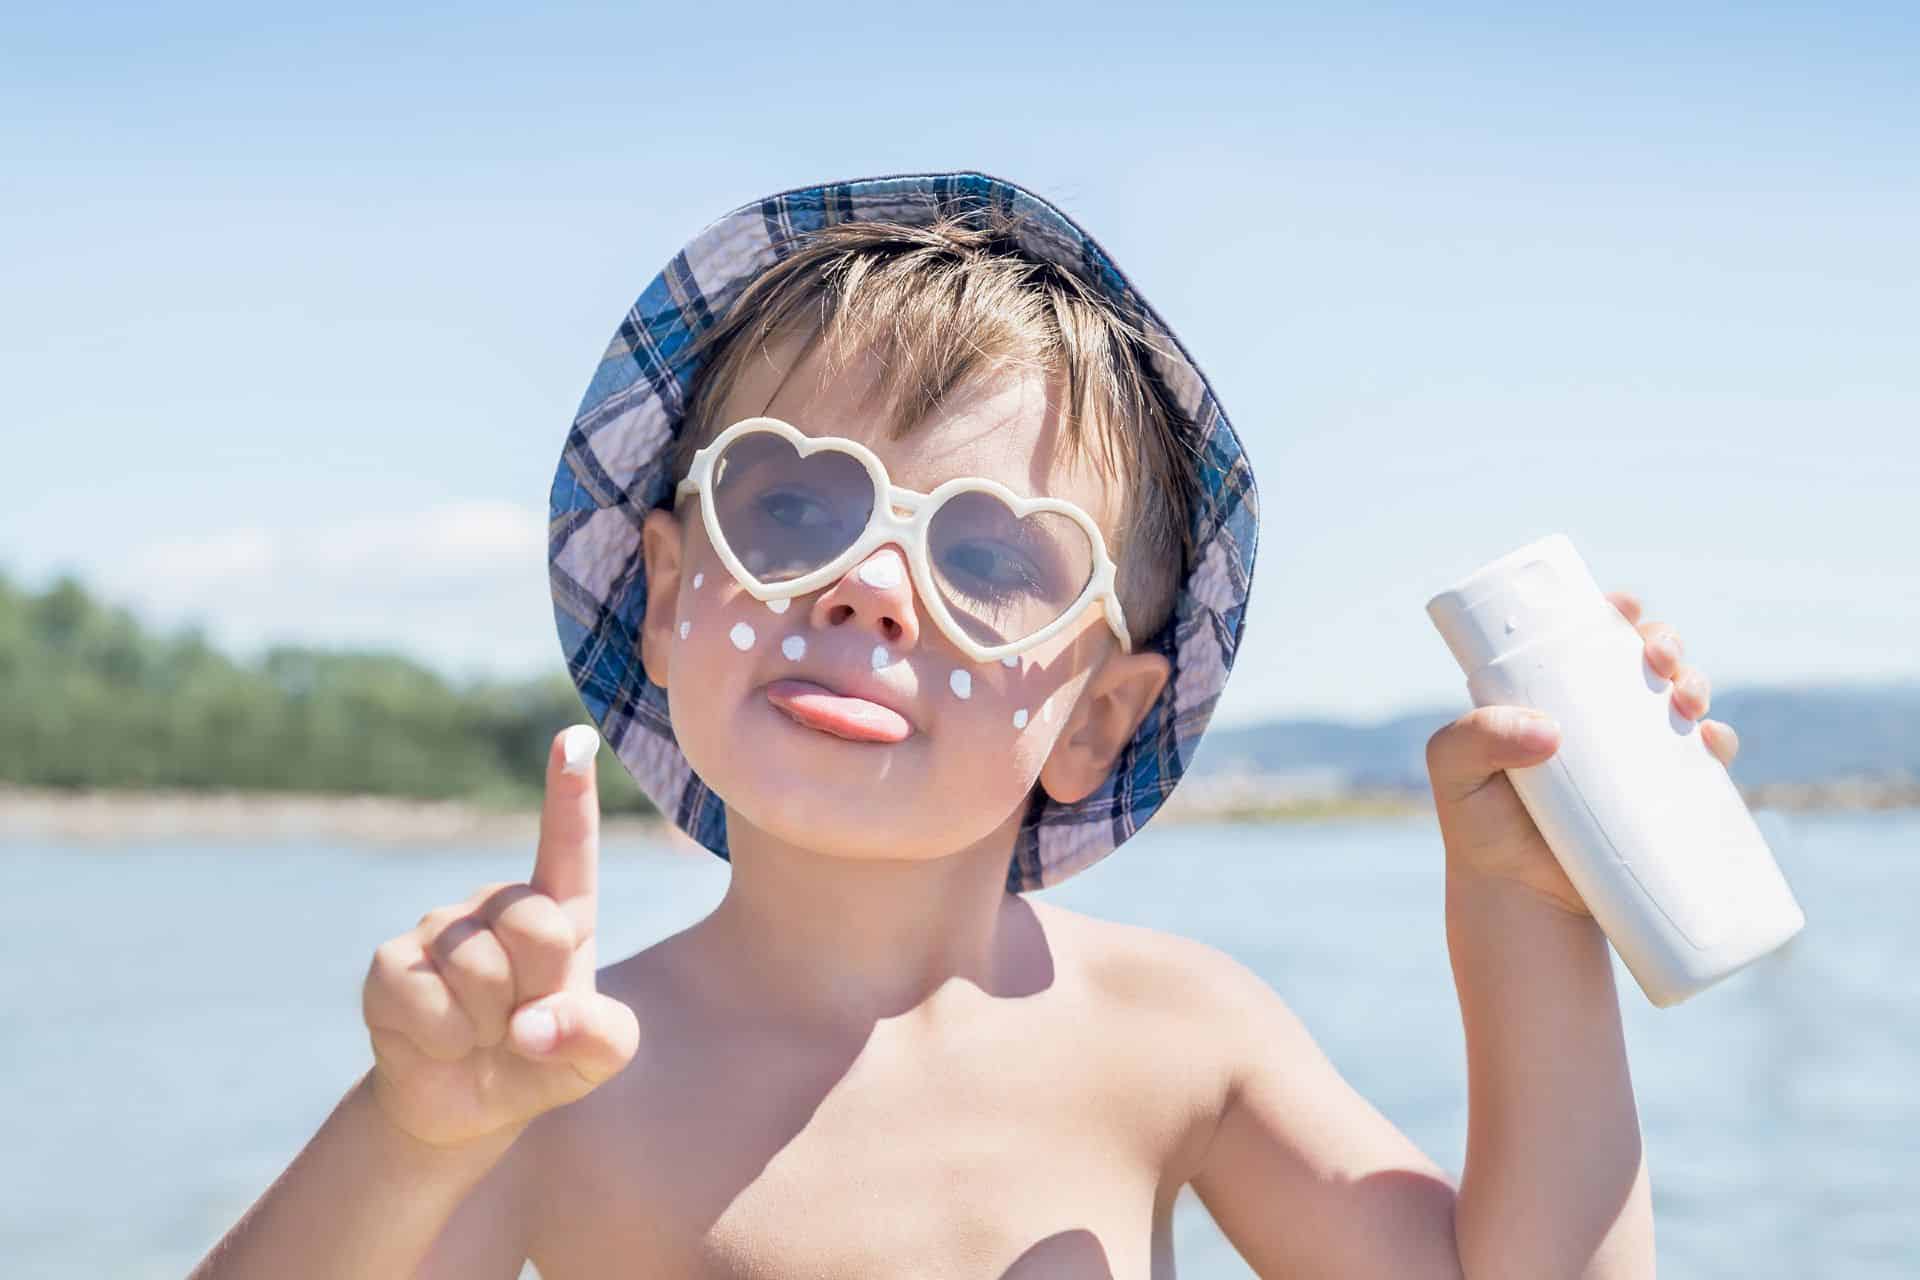 Hoge UV-straling: bescherming tegen zon extra belangrijk voor kinderen